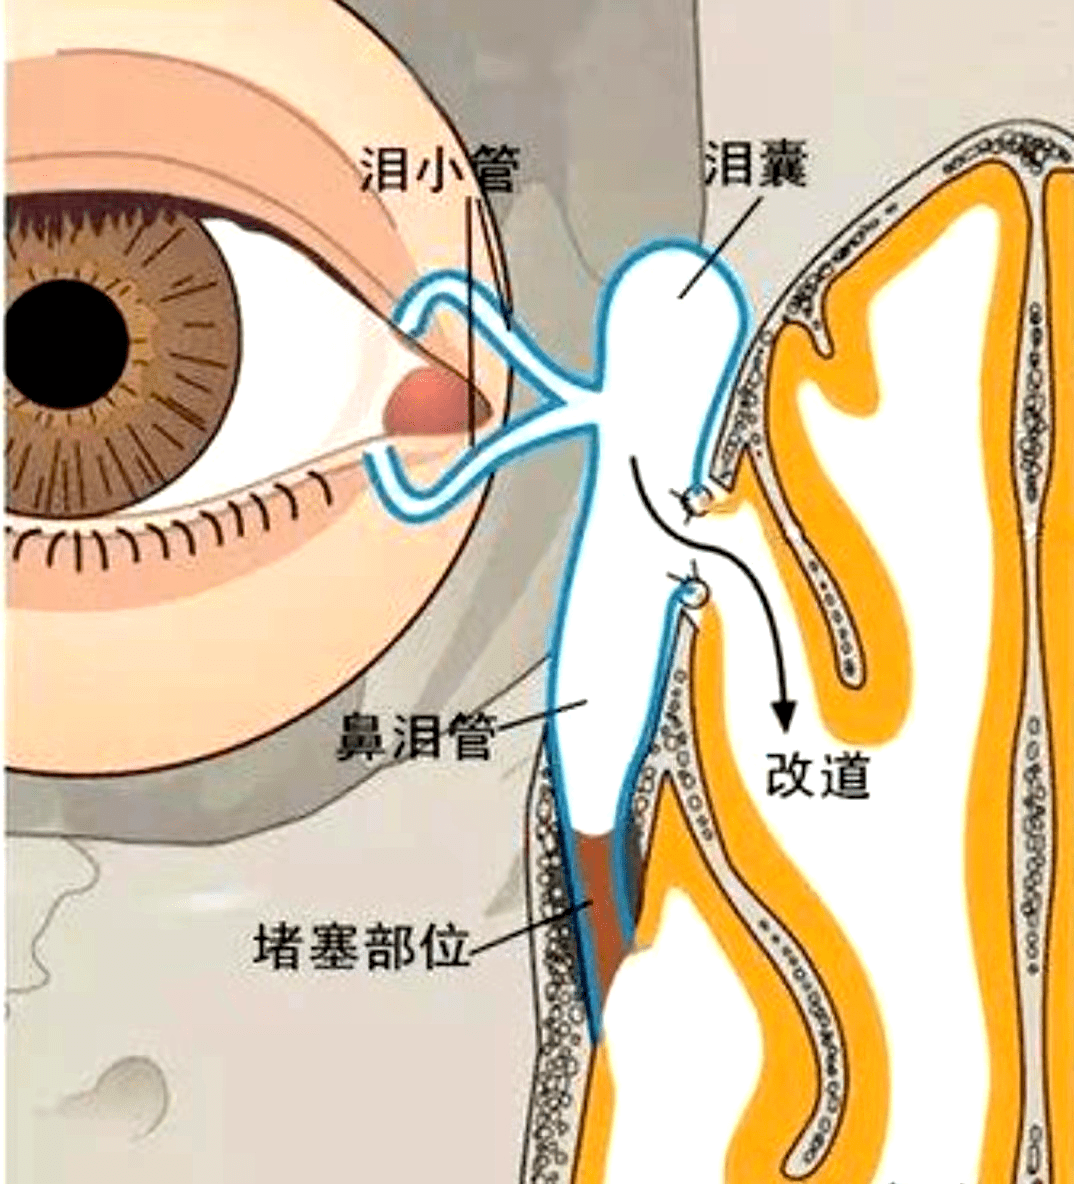 内眦泪囊部是哪个部位图片